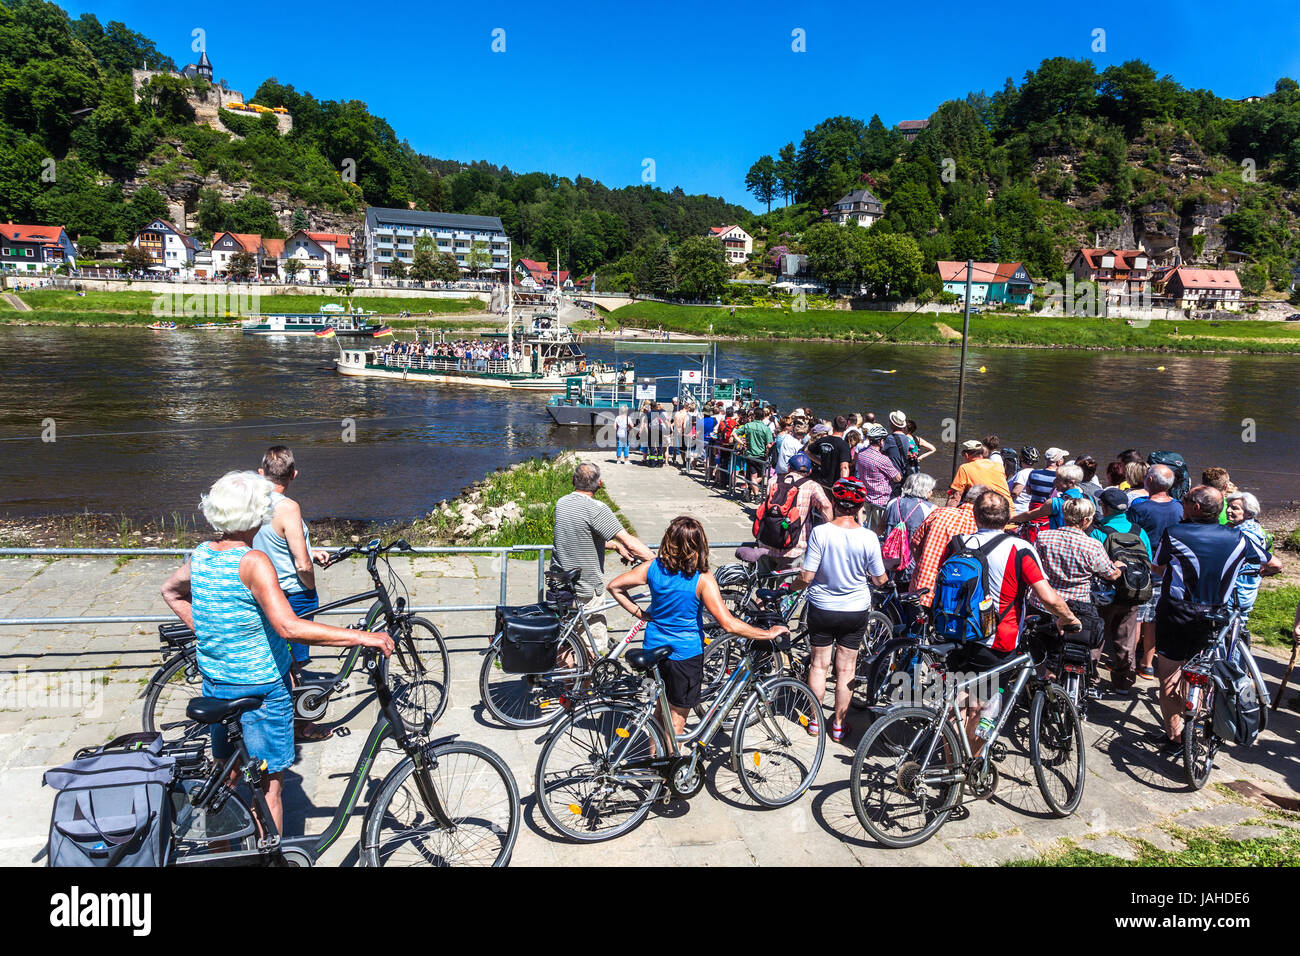 Menschenmassen auf dem Fahrrad Radfahrer warten auf dem Fährschiff, Kurort Rathen, Sächsische Schweiz Sommer Sachsen, Deutschland Elbe-Radweg Stockfoto